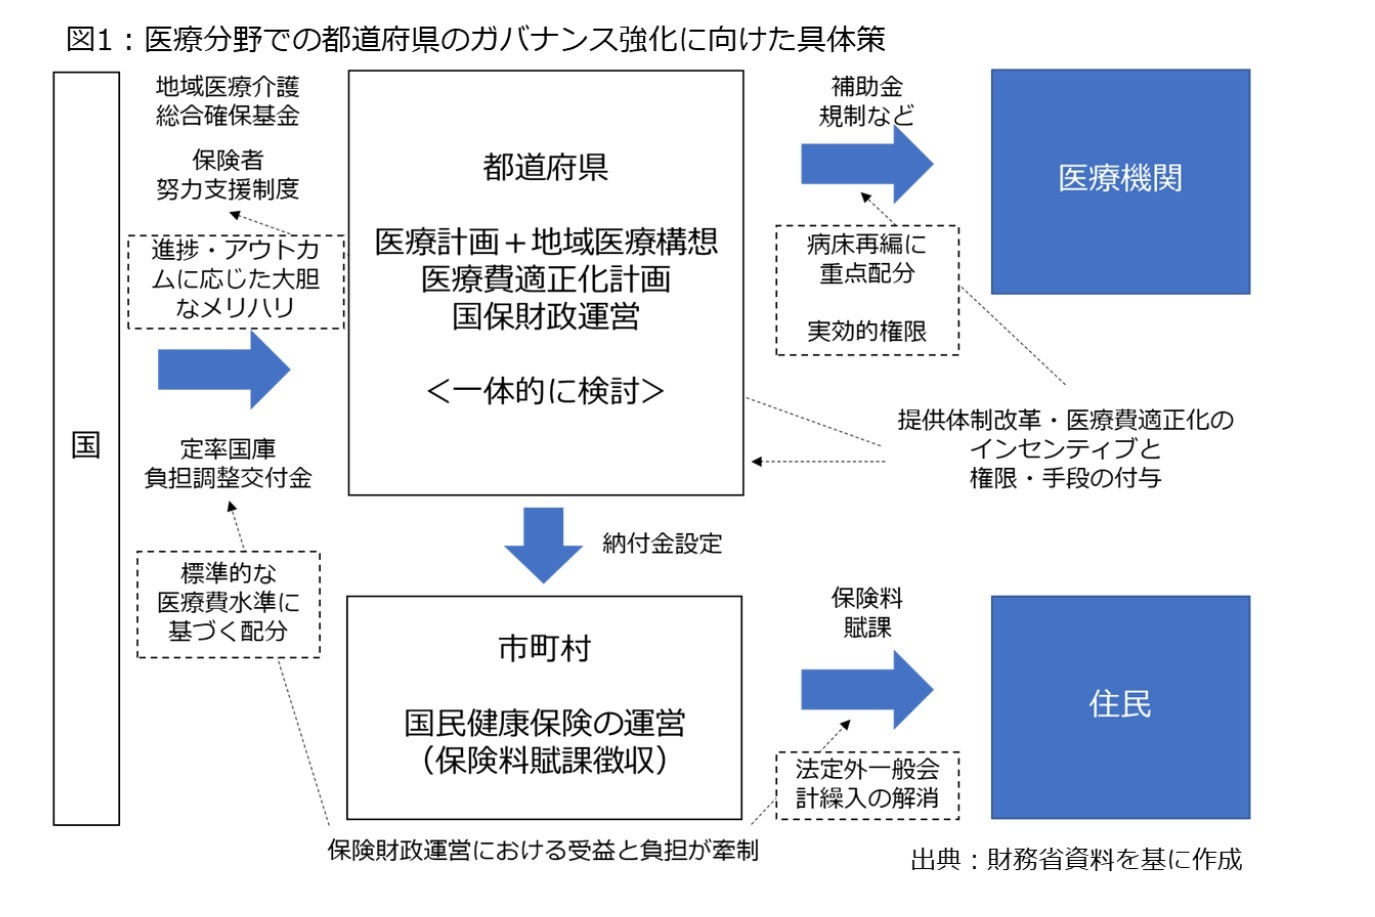 図1：医療分野での都道府県のガバナンス強化に向けた具体策